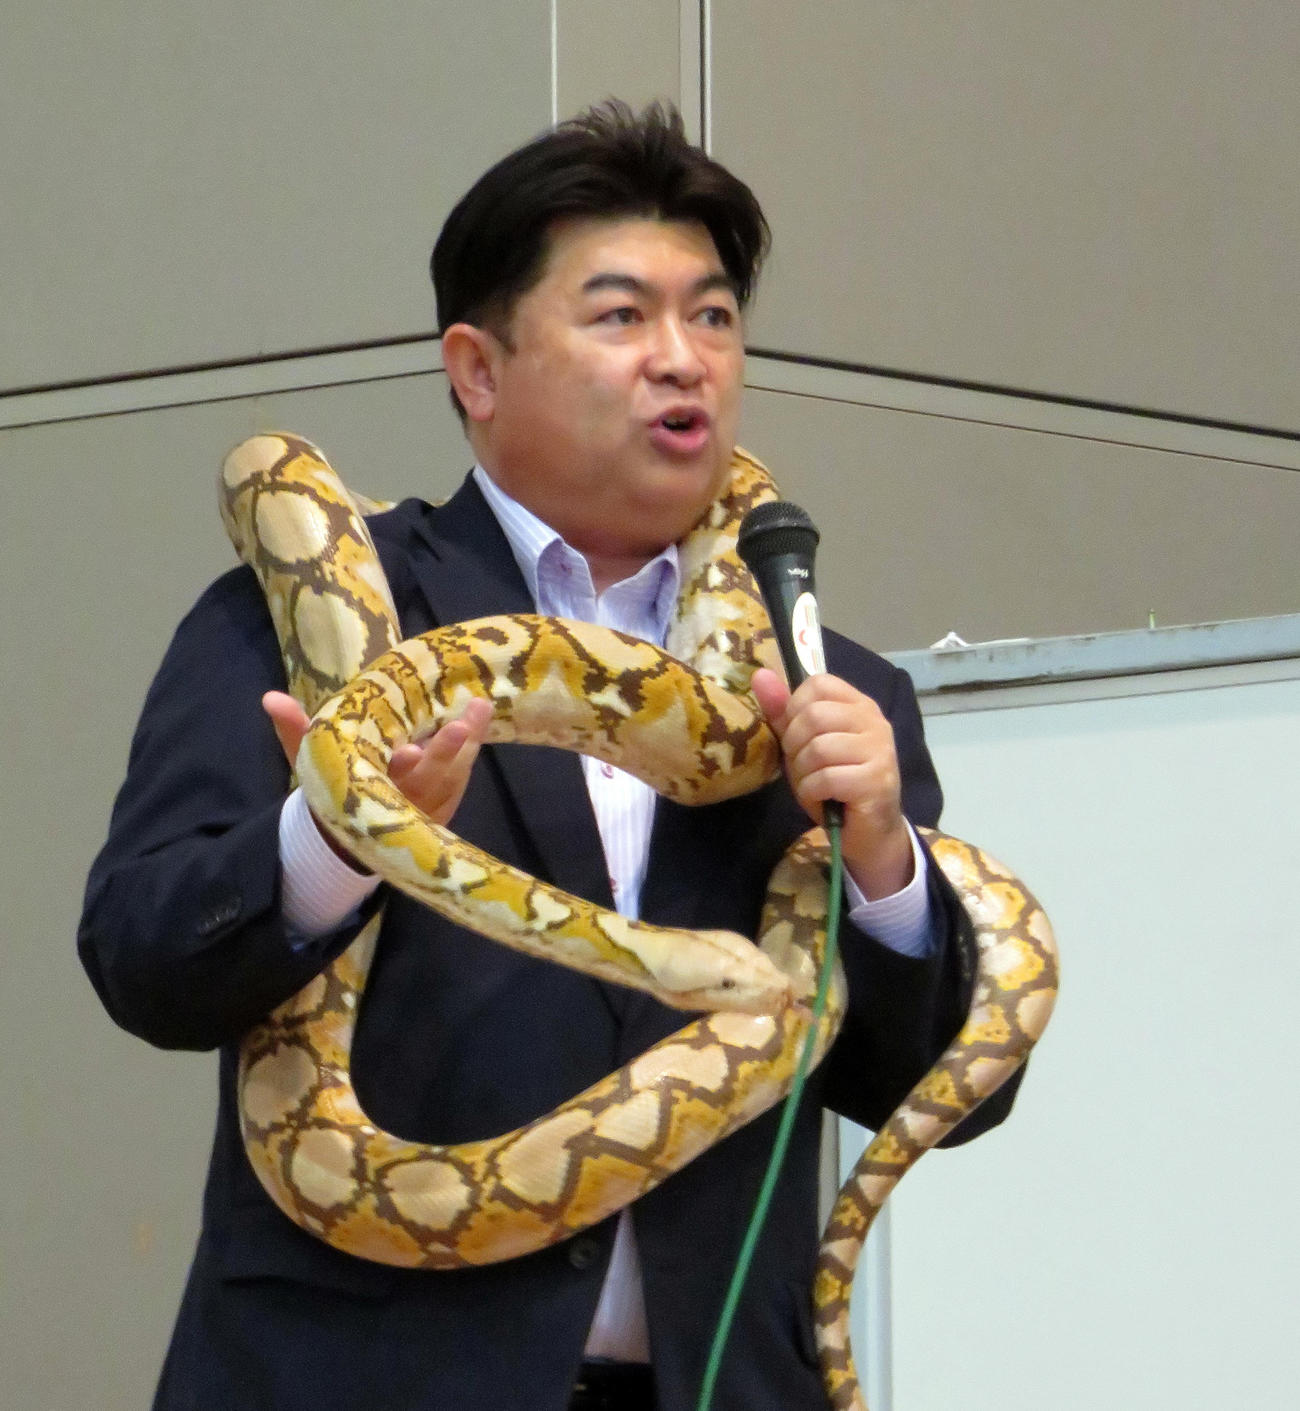 ジャパンレプタイルズショーのトークショーで昨年5月に横浜で逃走し捕獲したアミメニシキヘビを体に巻く体感型動物園iZoo白輪剛史園長（撮影・鎌田直秀）